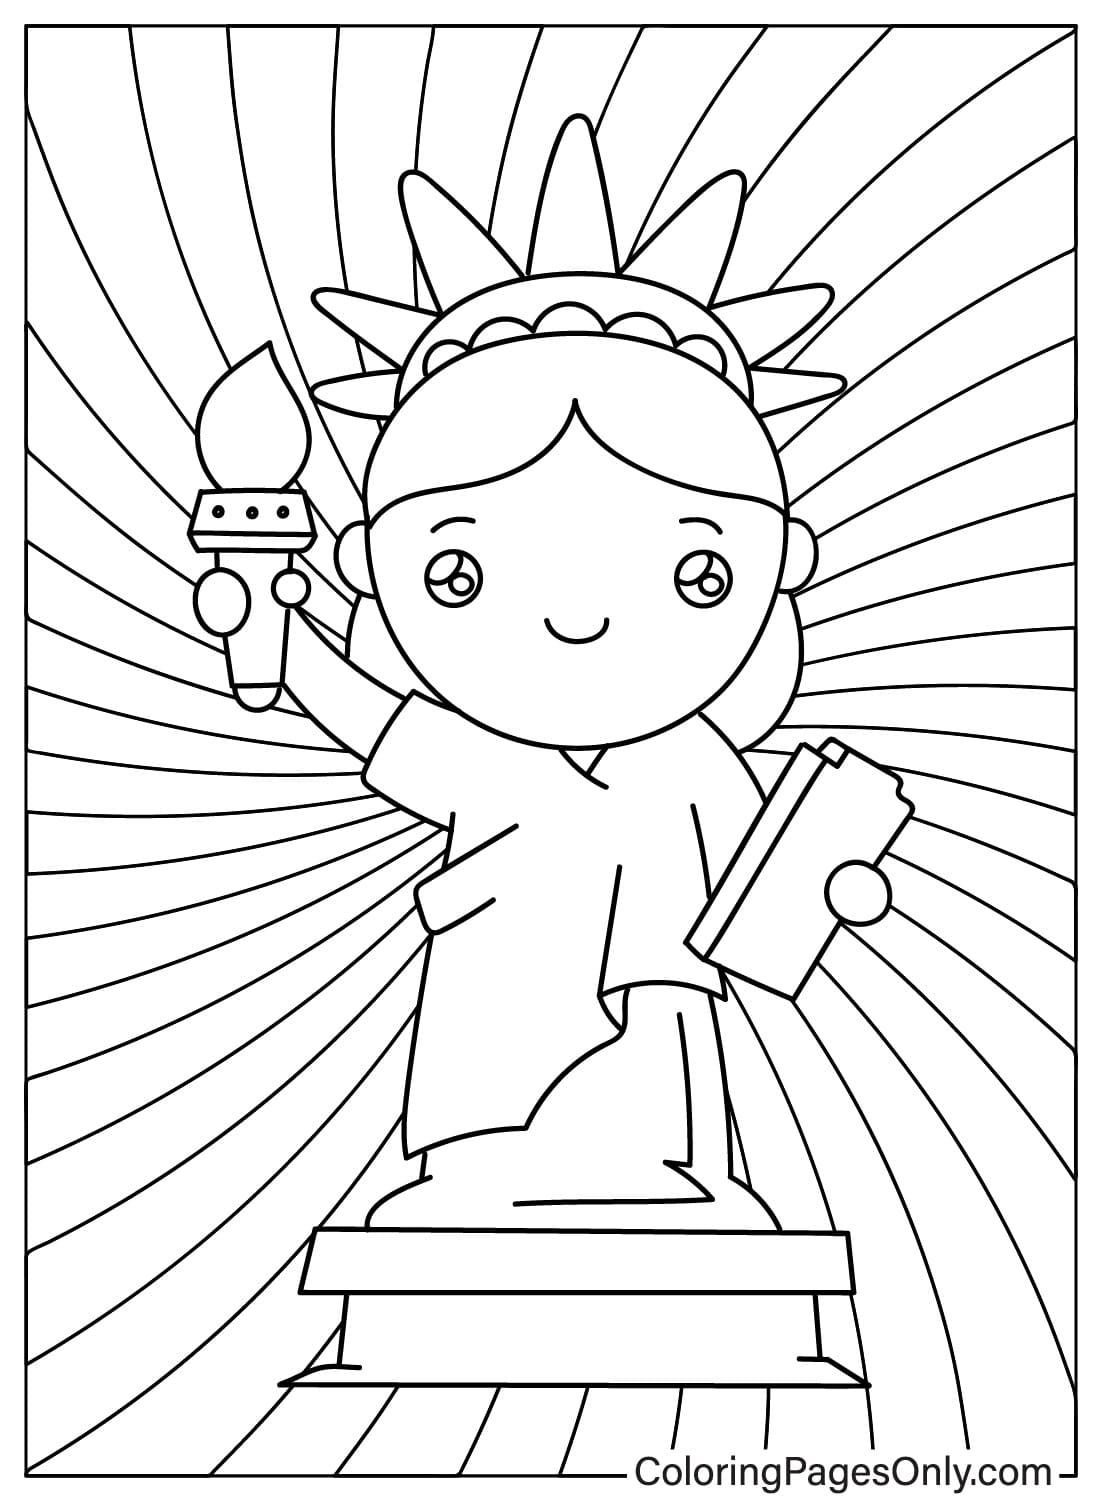 Раскраска Статуя Свободы в стиле чиби из Статуи Свободы